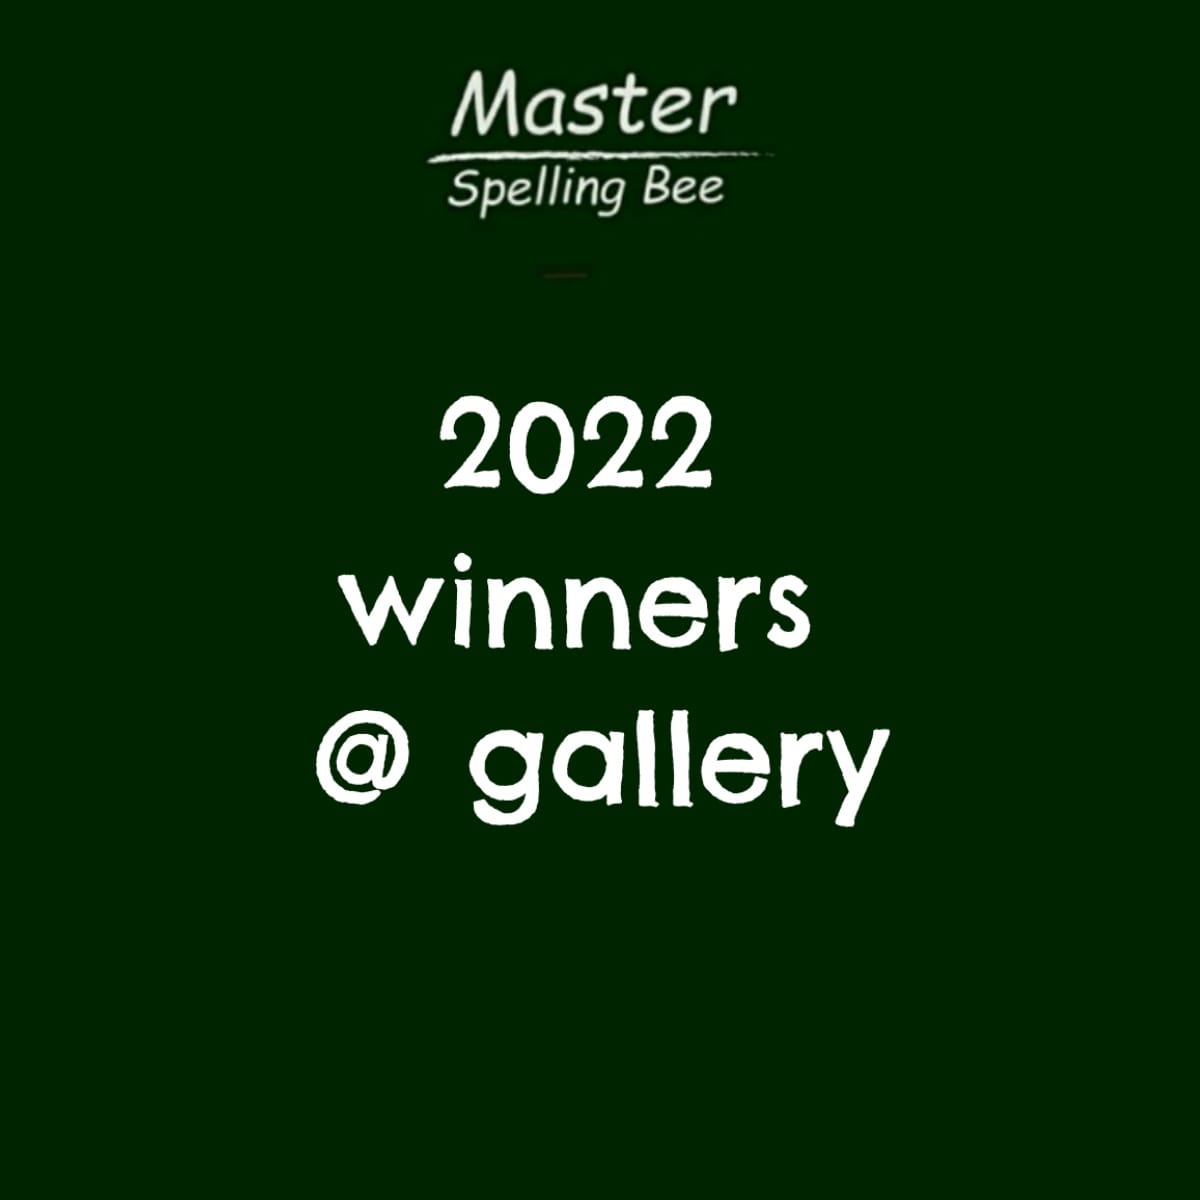 2022 winners & gallery